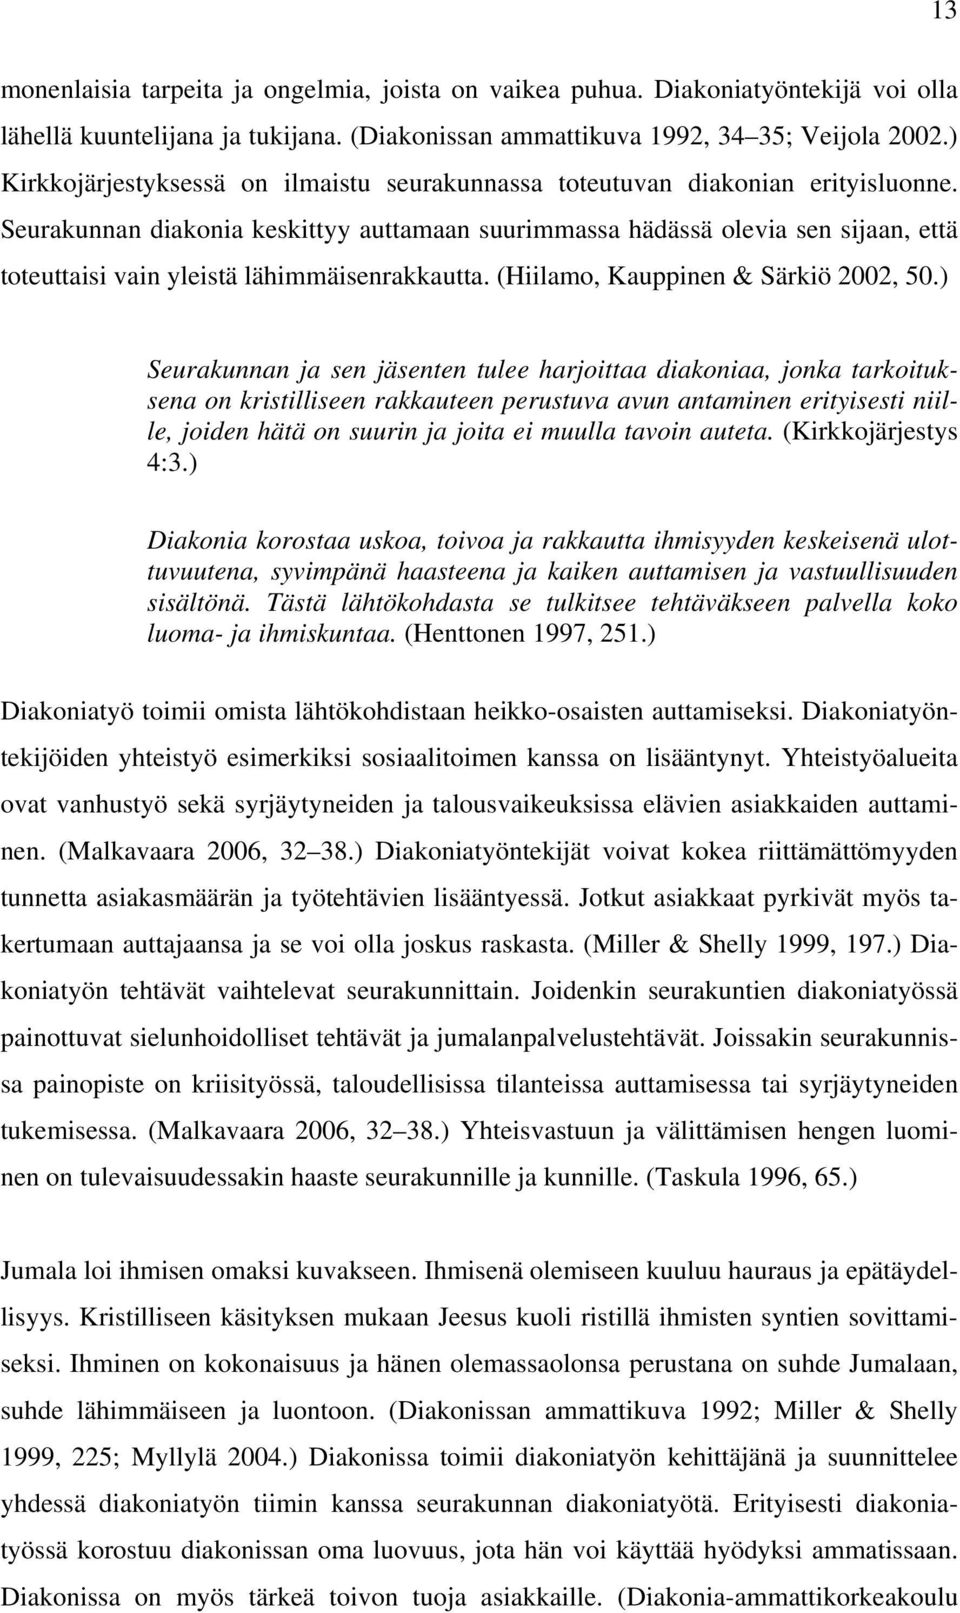 Seurakunnan diakonia keskittyy auttamaan suurimmassa hädässä olevia sen sijaan, että toteuttaisi vain yleistä lähimmäisenrakkautta. (Hiilamo, Kauppinen & Särkiö 2002, 50.